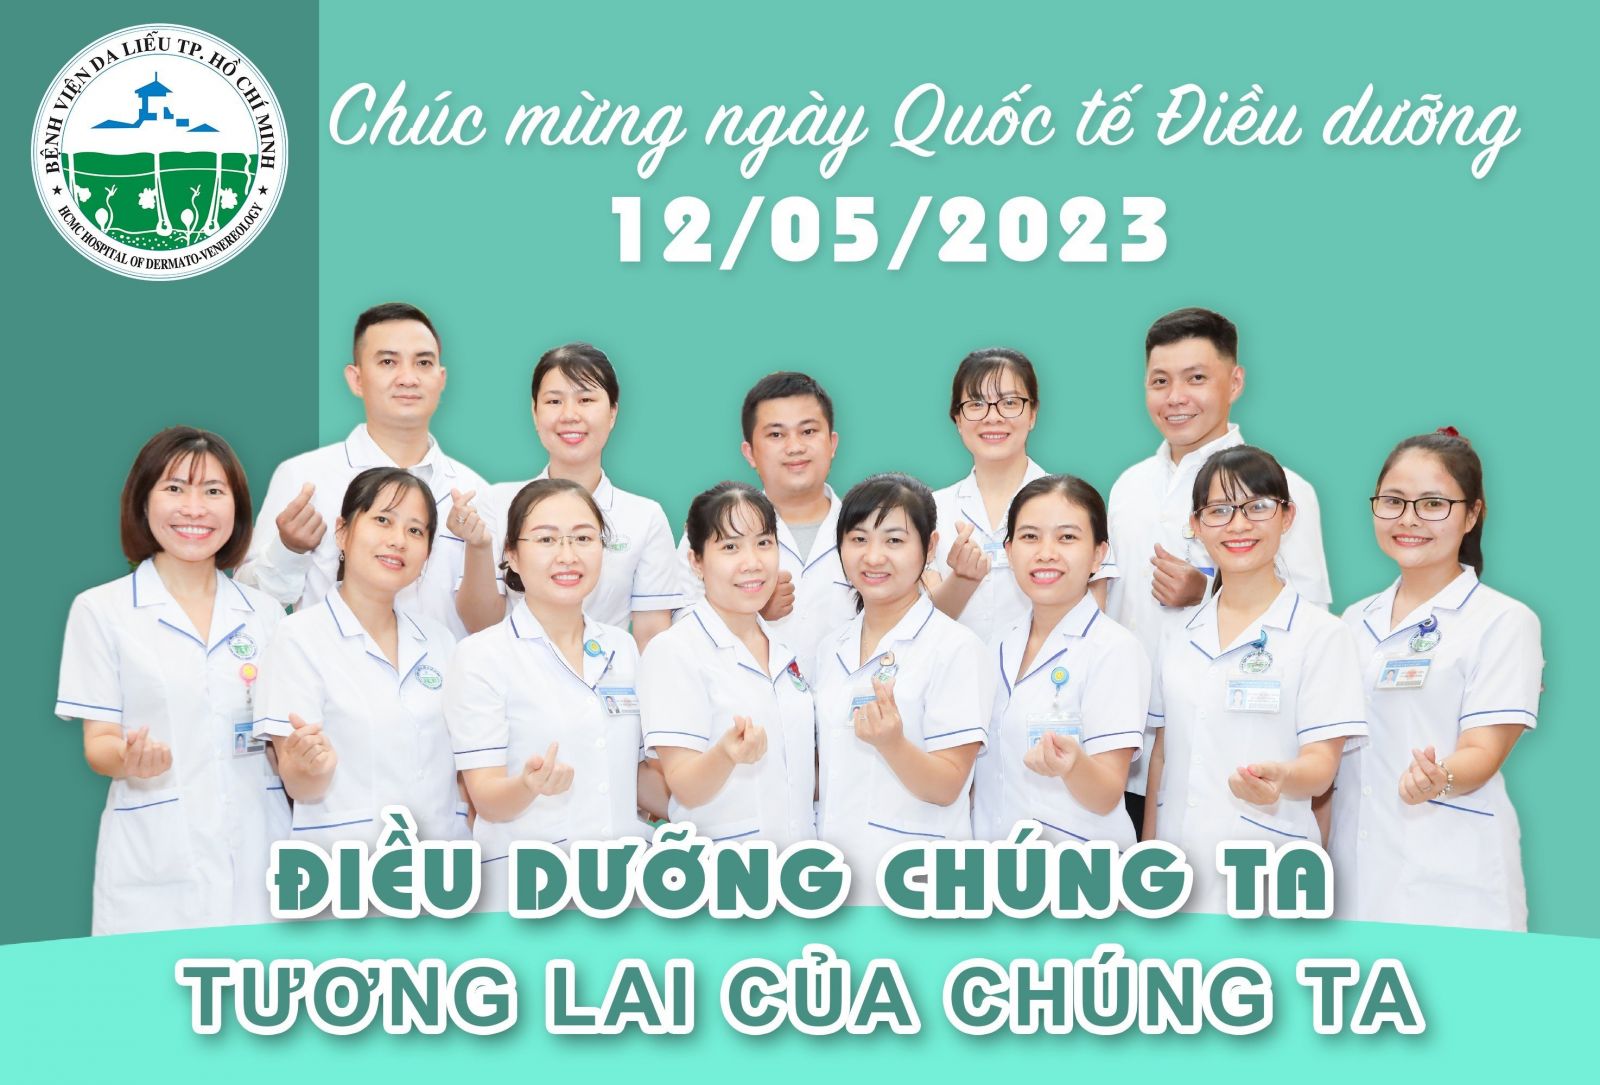 chuc-mung-quoc-te-dieu-duong-2023